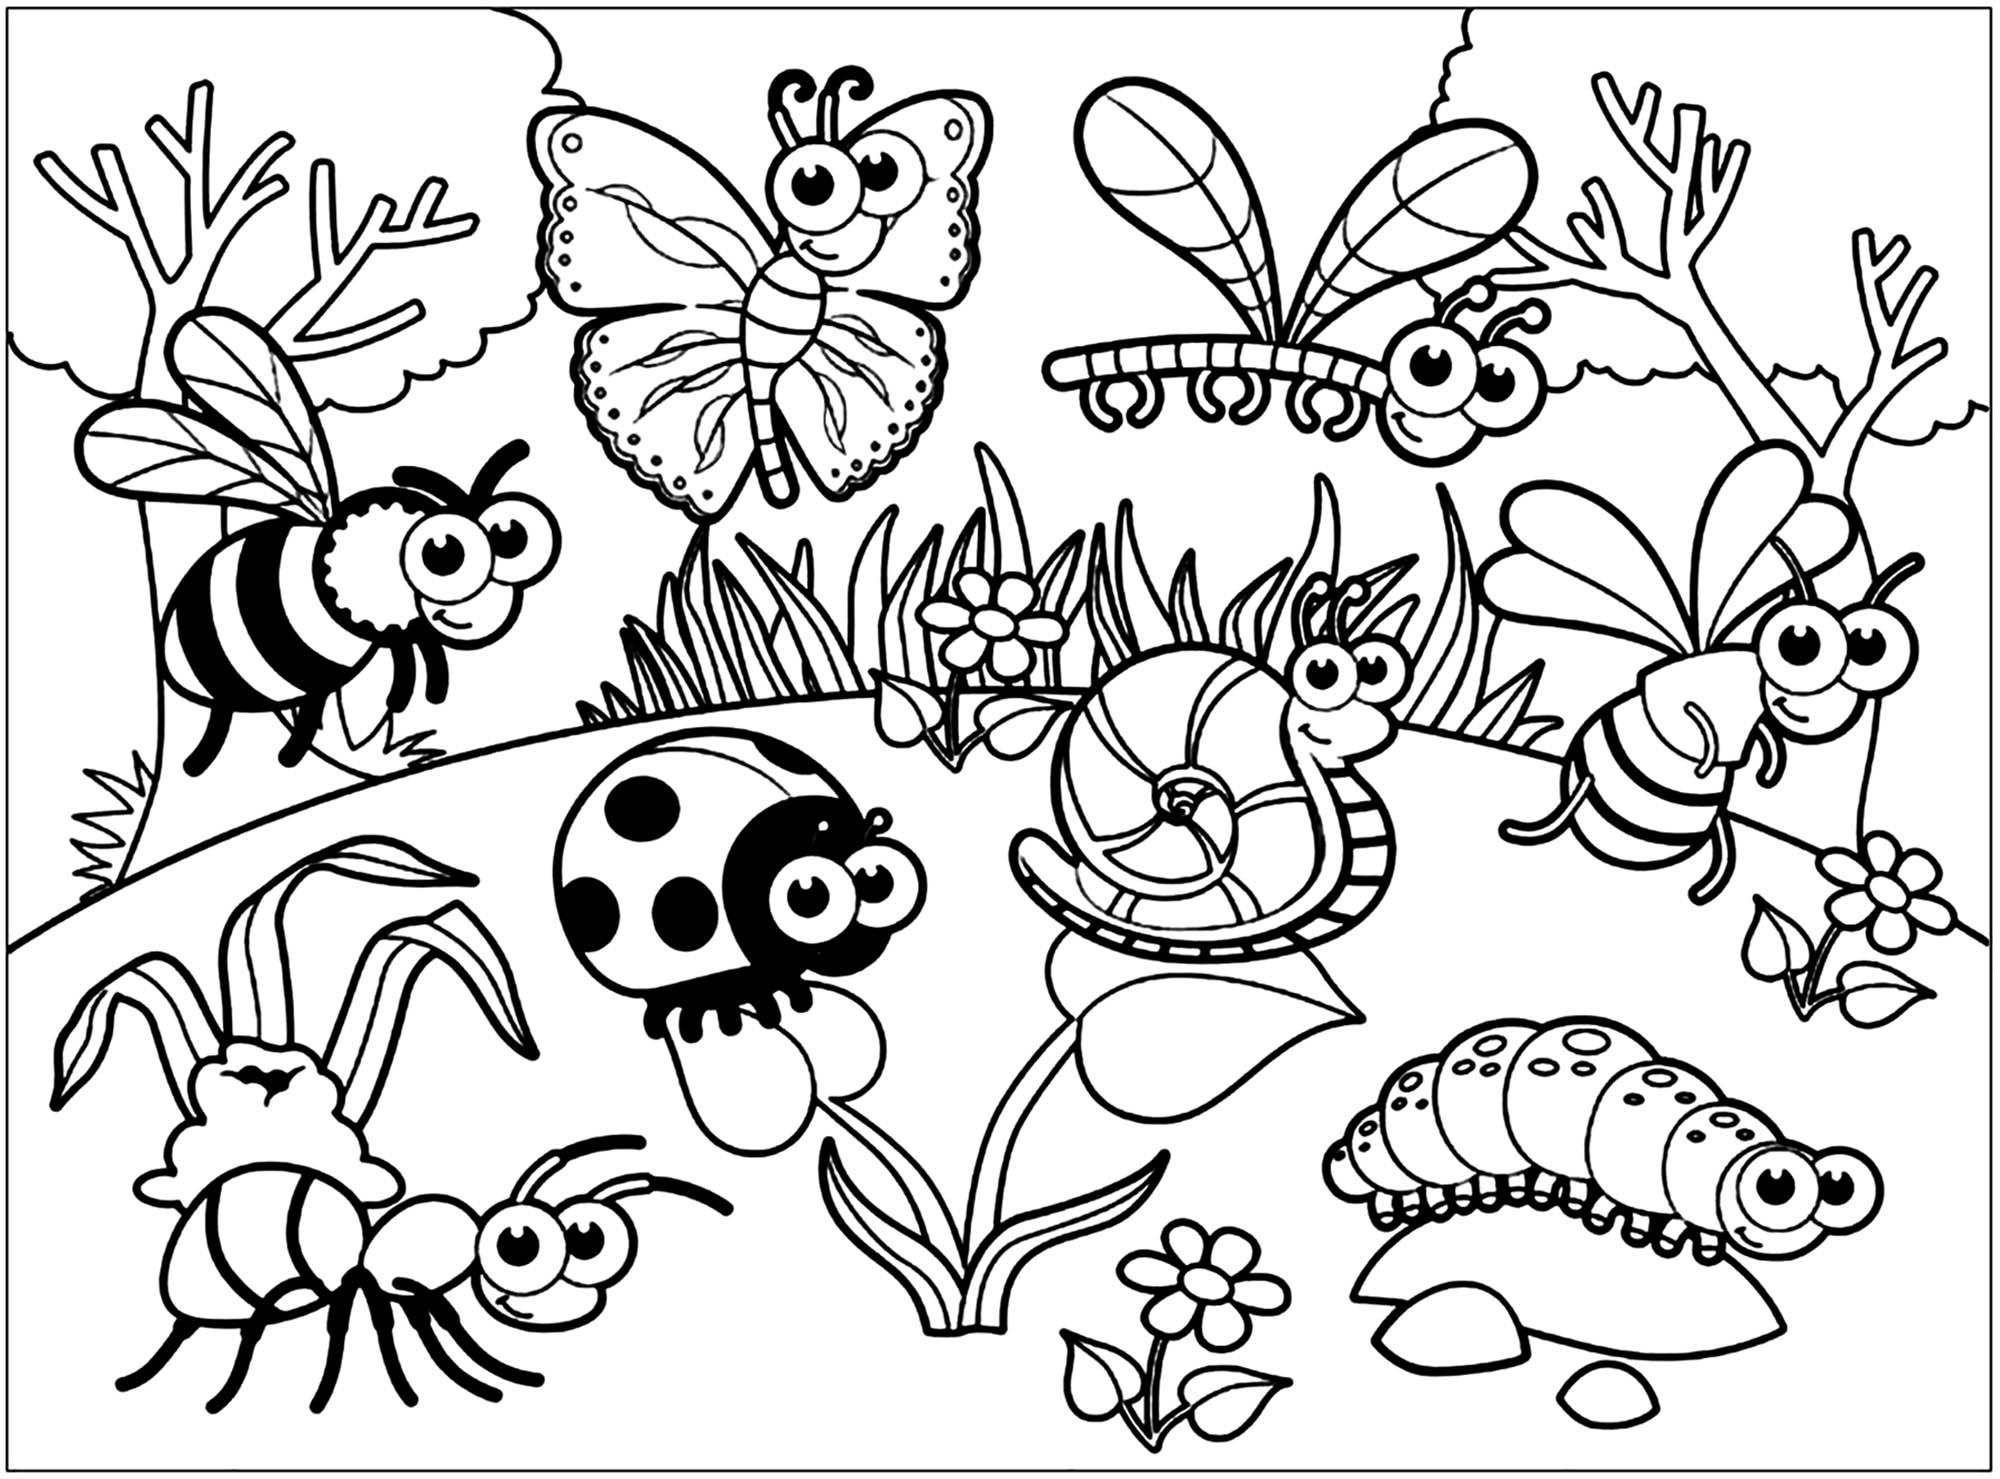 Tranh tô màu chuồn chuồn và các loài côn trùng khác